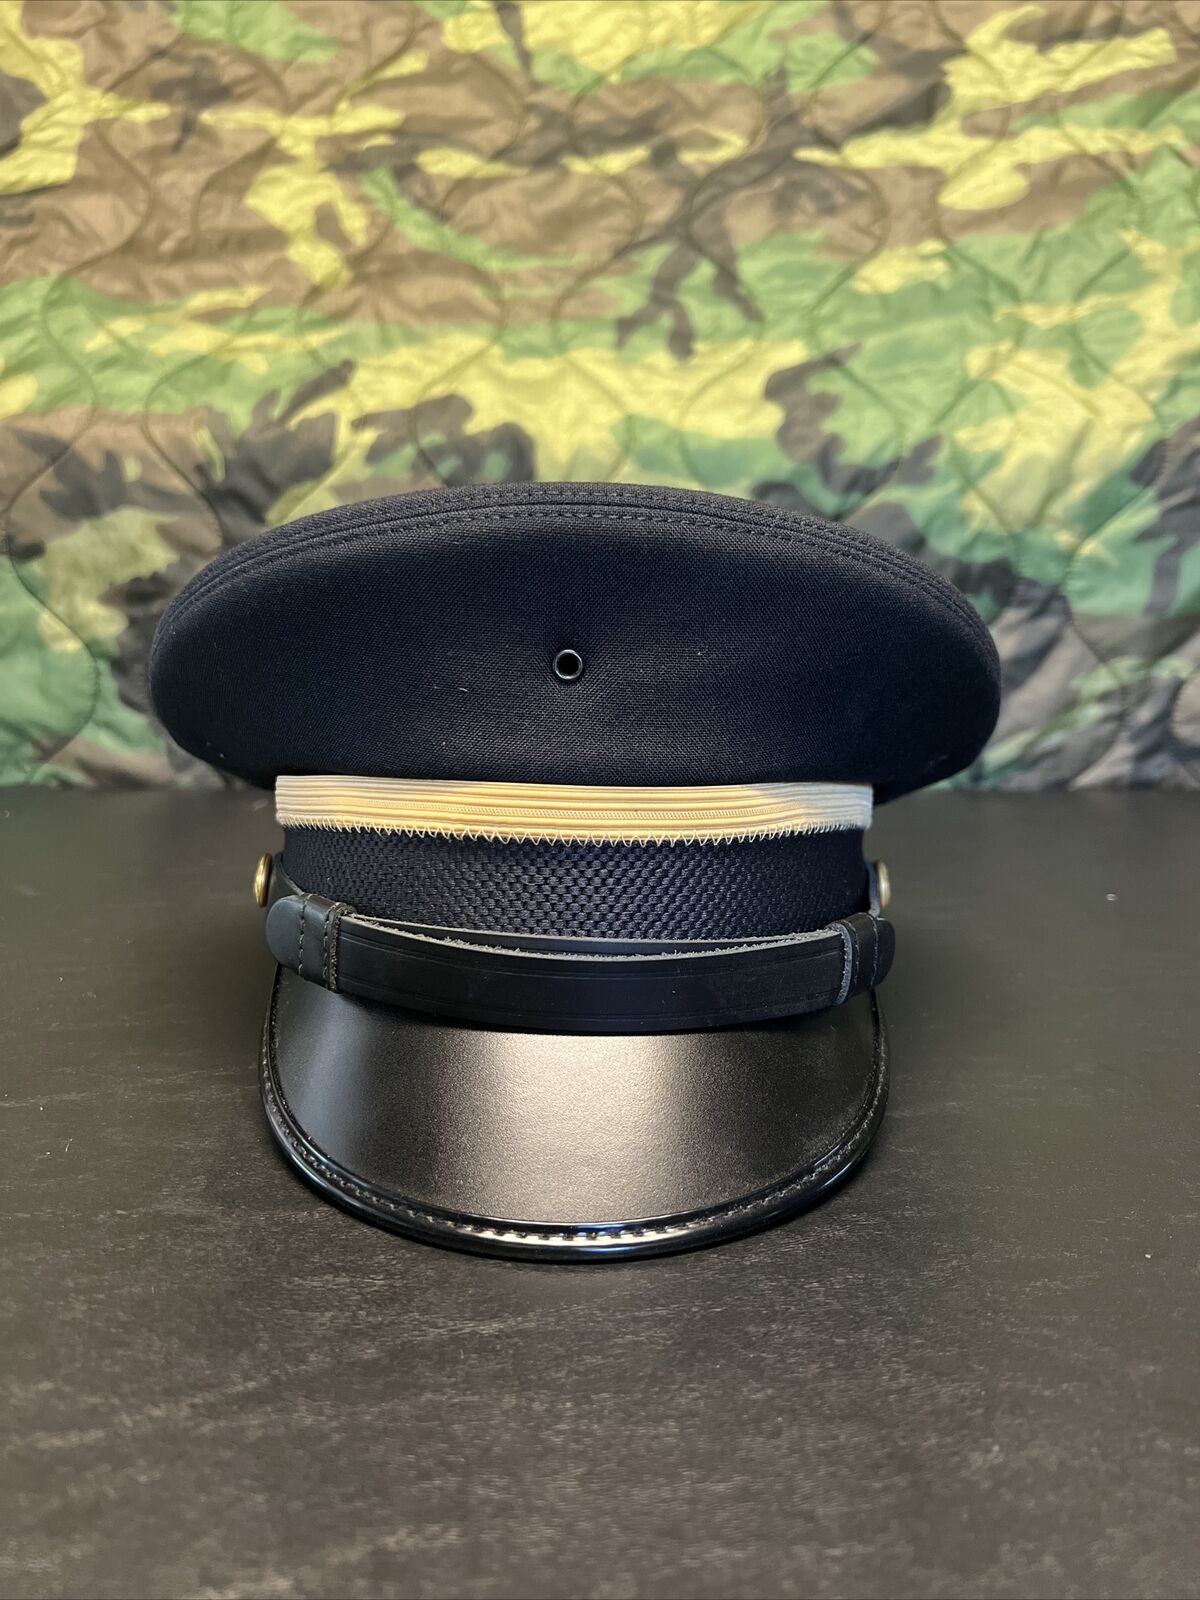 Kingform Cap Size 7 Armed Forces US Army Dress Uniform Cap Blue Enlisted K-9